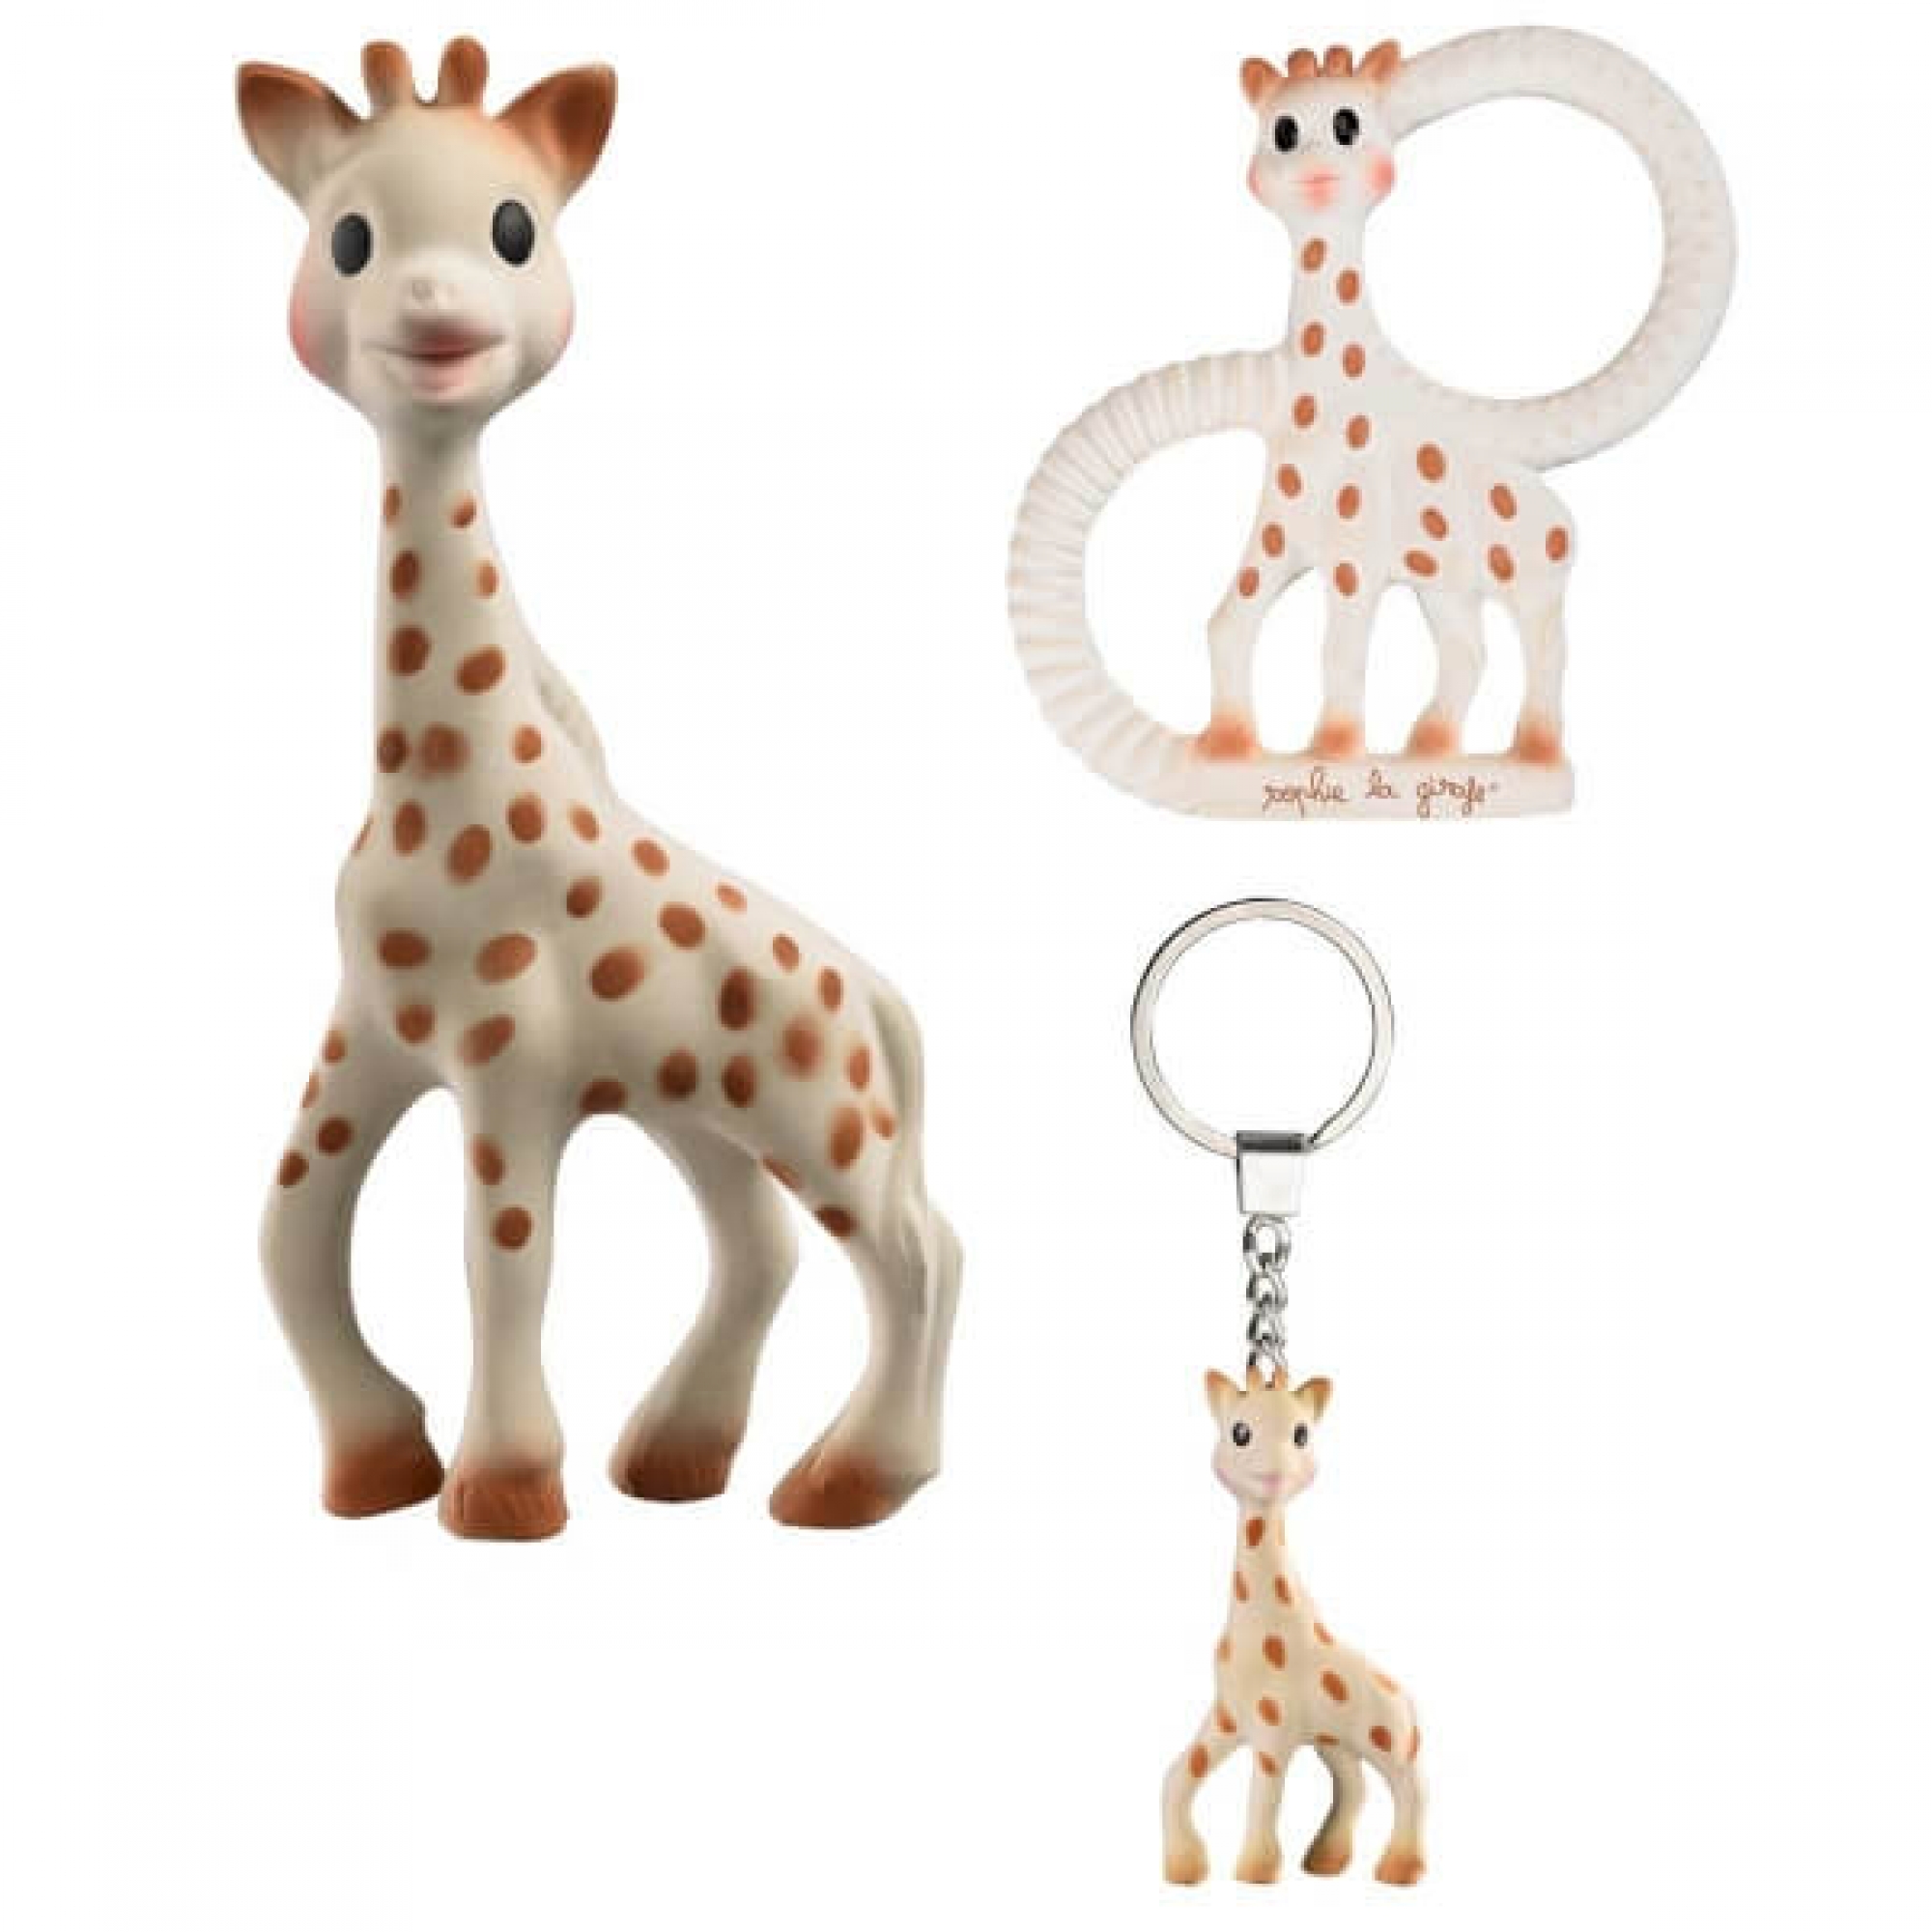 Protege carnet de sante so pure sophie la girafe, jouets 1er age